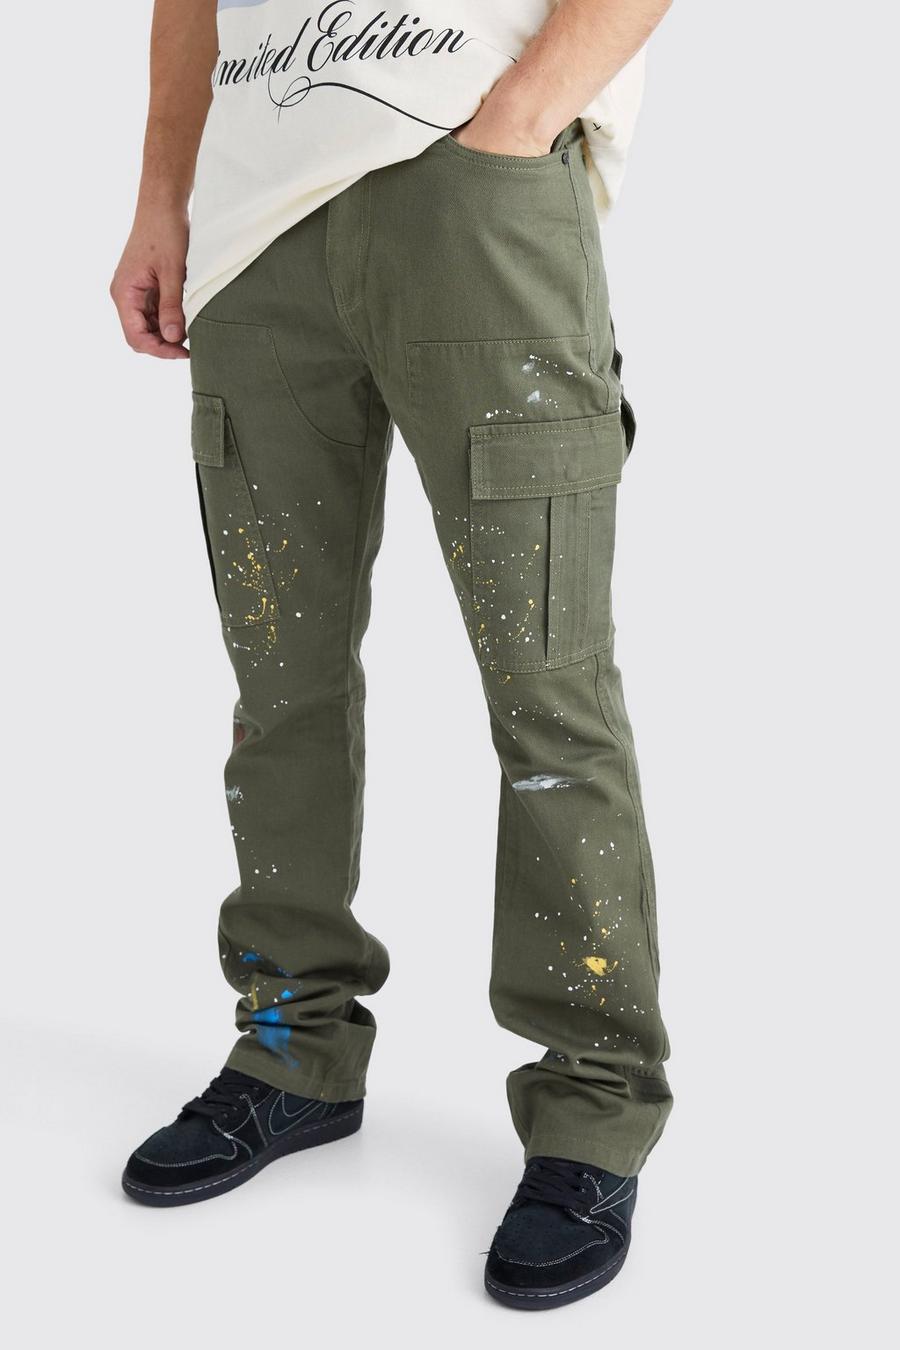 Khaki Tall Slim Flare Gusset Paint Splatter Cargo Trouser